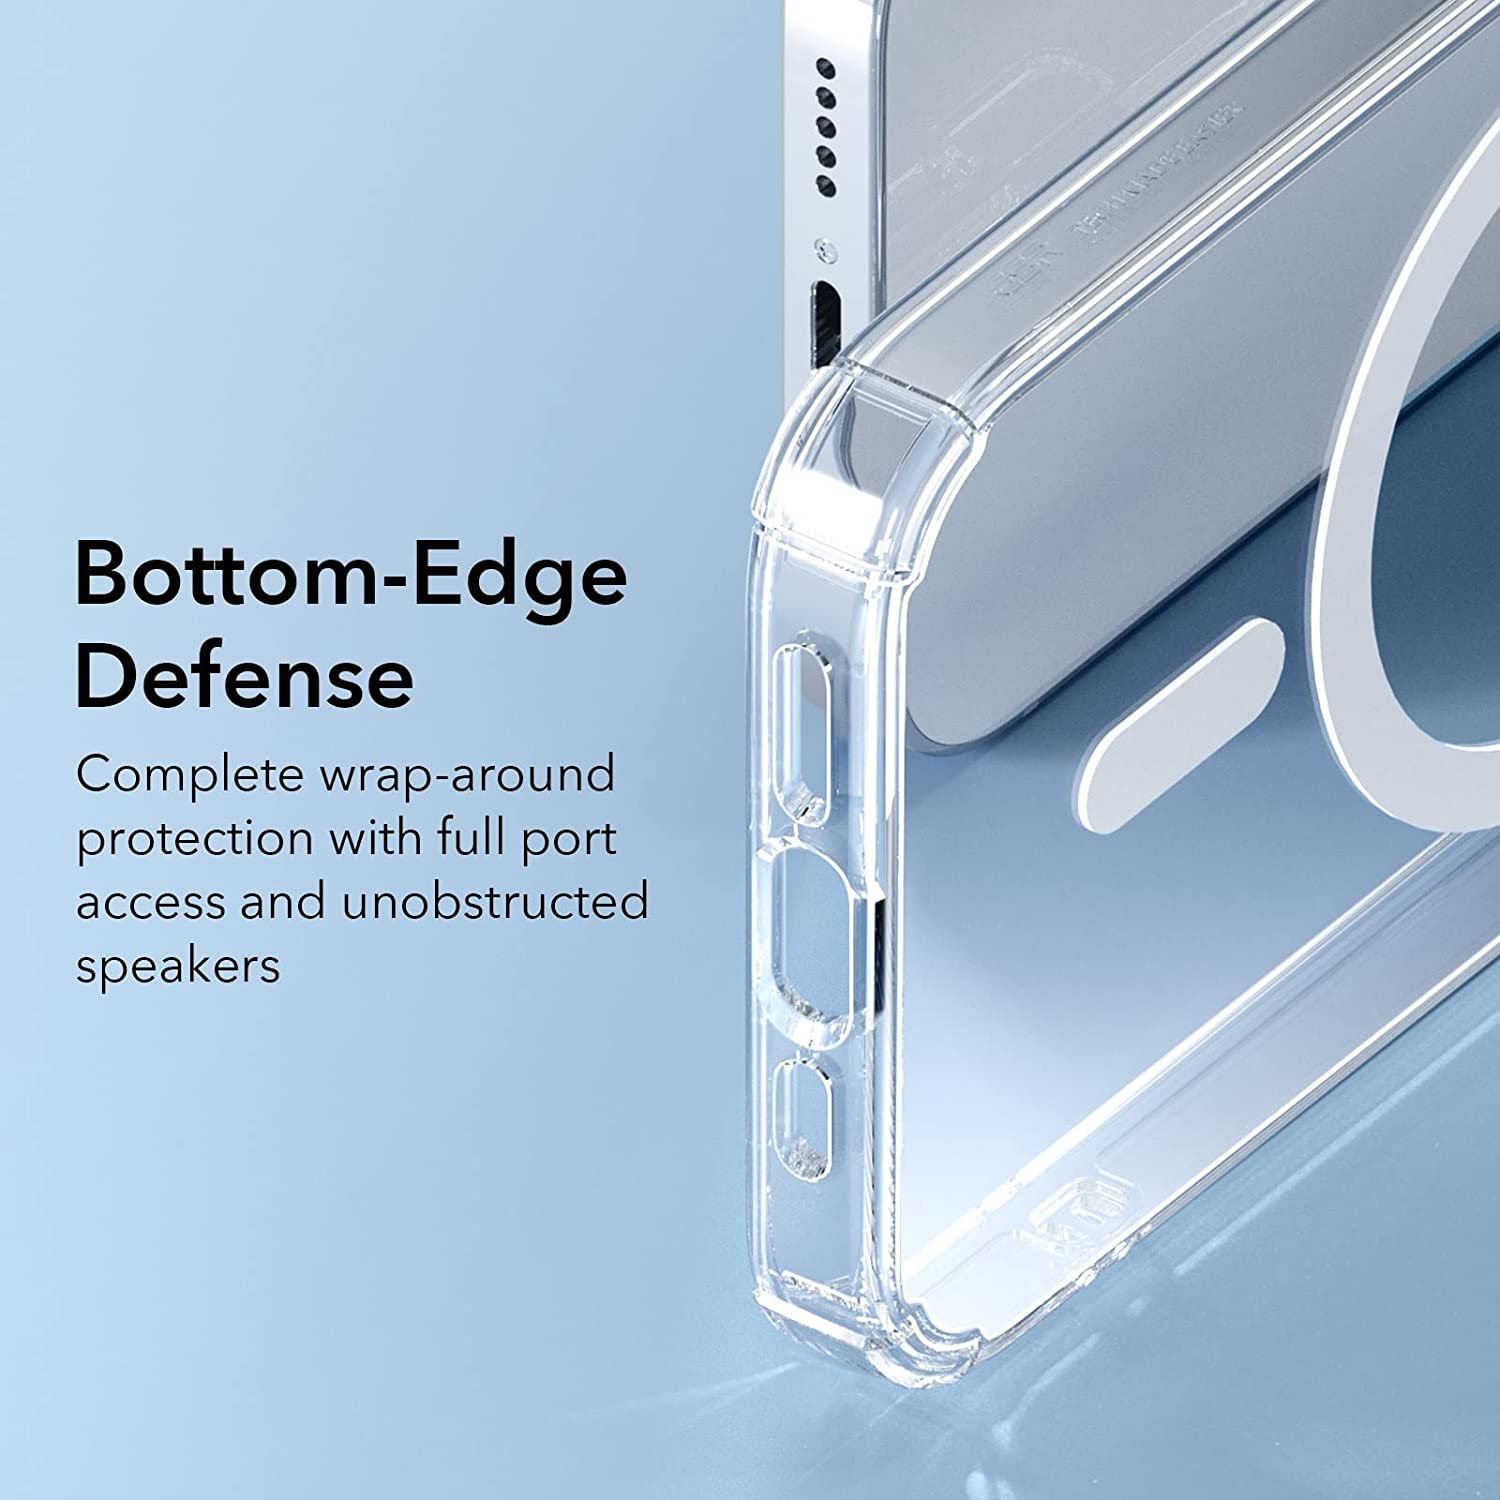 Ốp lưng chống sốc trong suốt hỗ trợ sạc Maqsafe cho iPhone 14 Pro (6.1 inch) hiệu Memumi Maqsafe Magetic Case siêu mỏng 1.5mm, độ trong tuyệt đối, chống trầy xước, chống ố vàng, tản nhiệt tốt - Hàng nhập khẩu